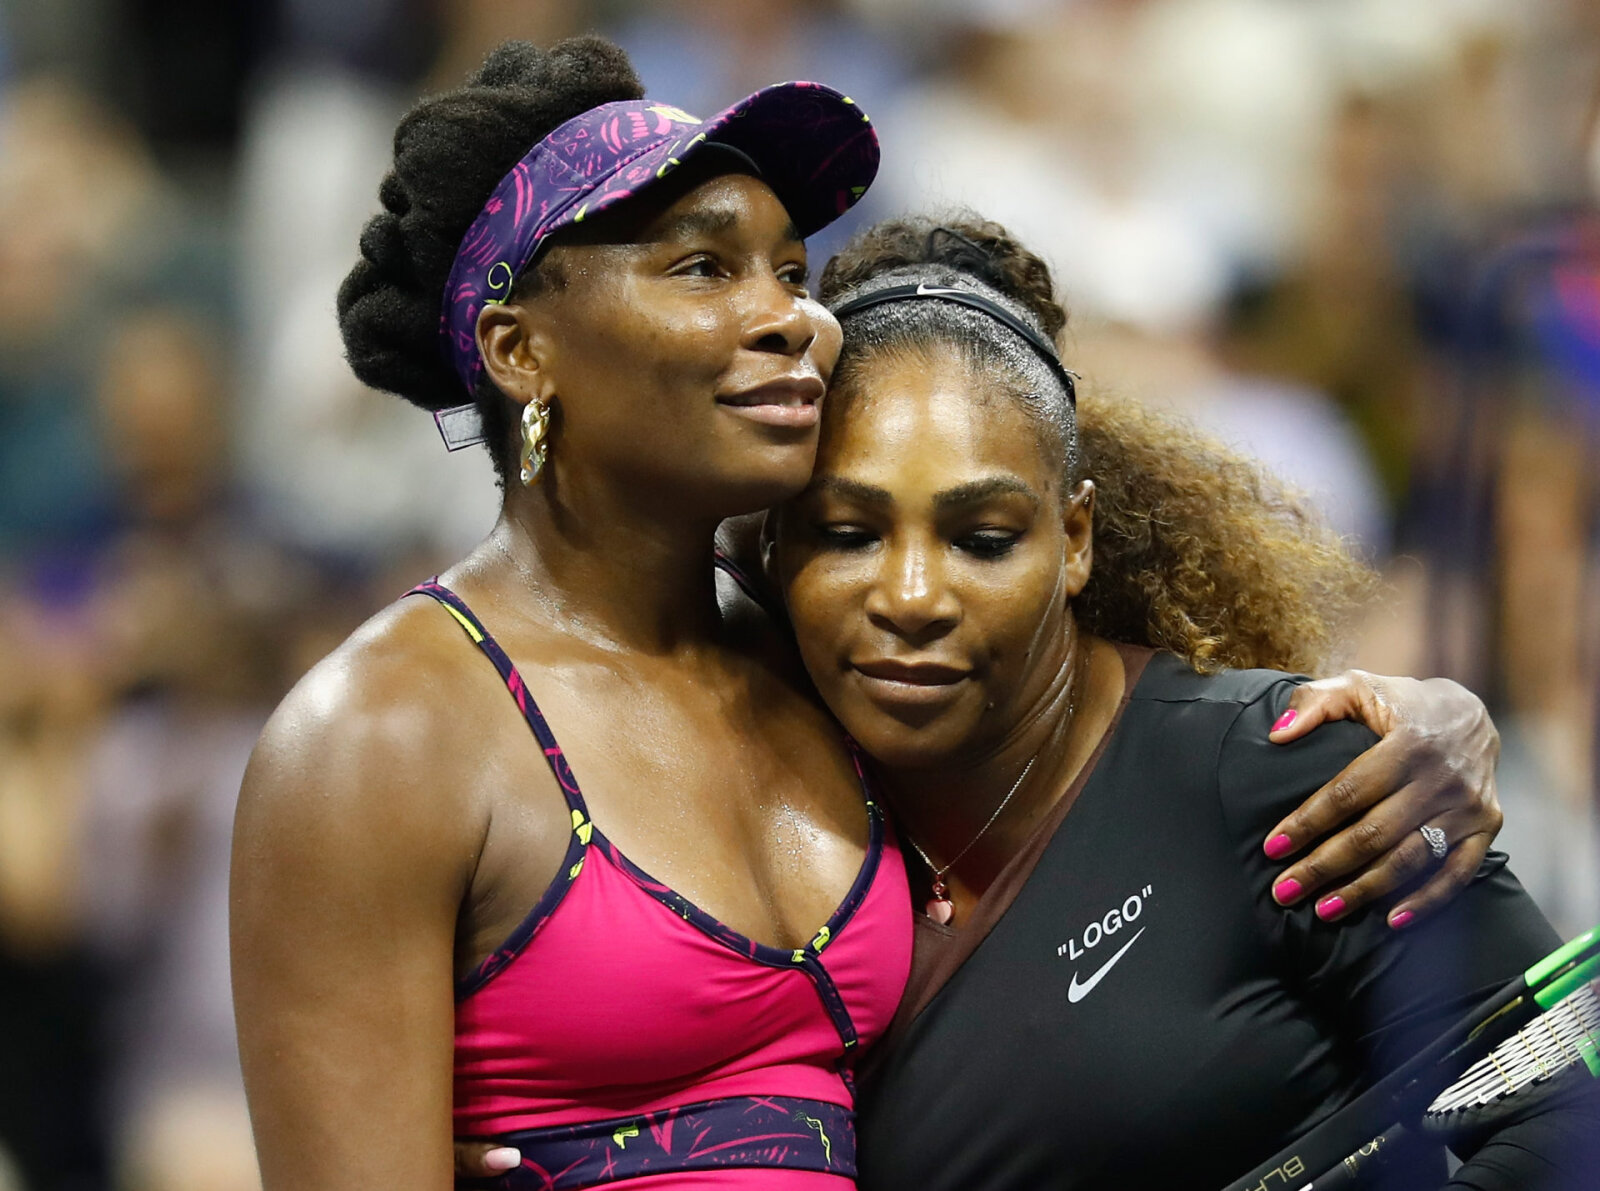 "J'ai été remplacé par Nick Kyrgios": Serena Williams réagit au nouveau partenariat de Vénus aux championnats de Wimbledon 2021